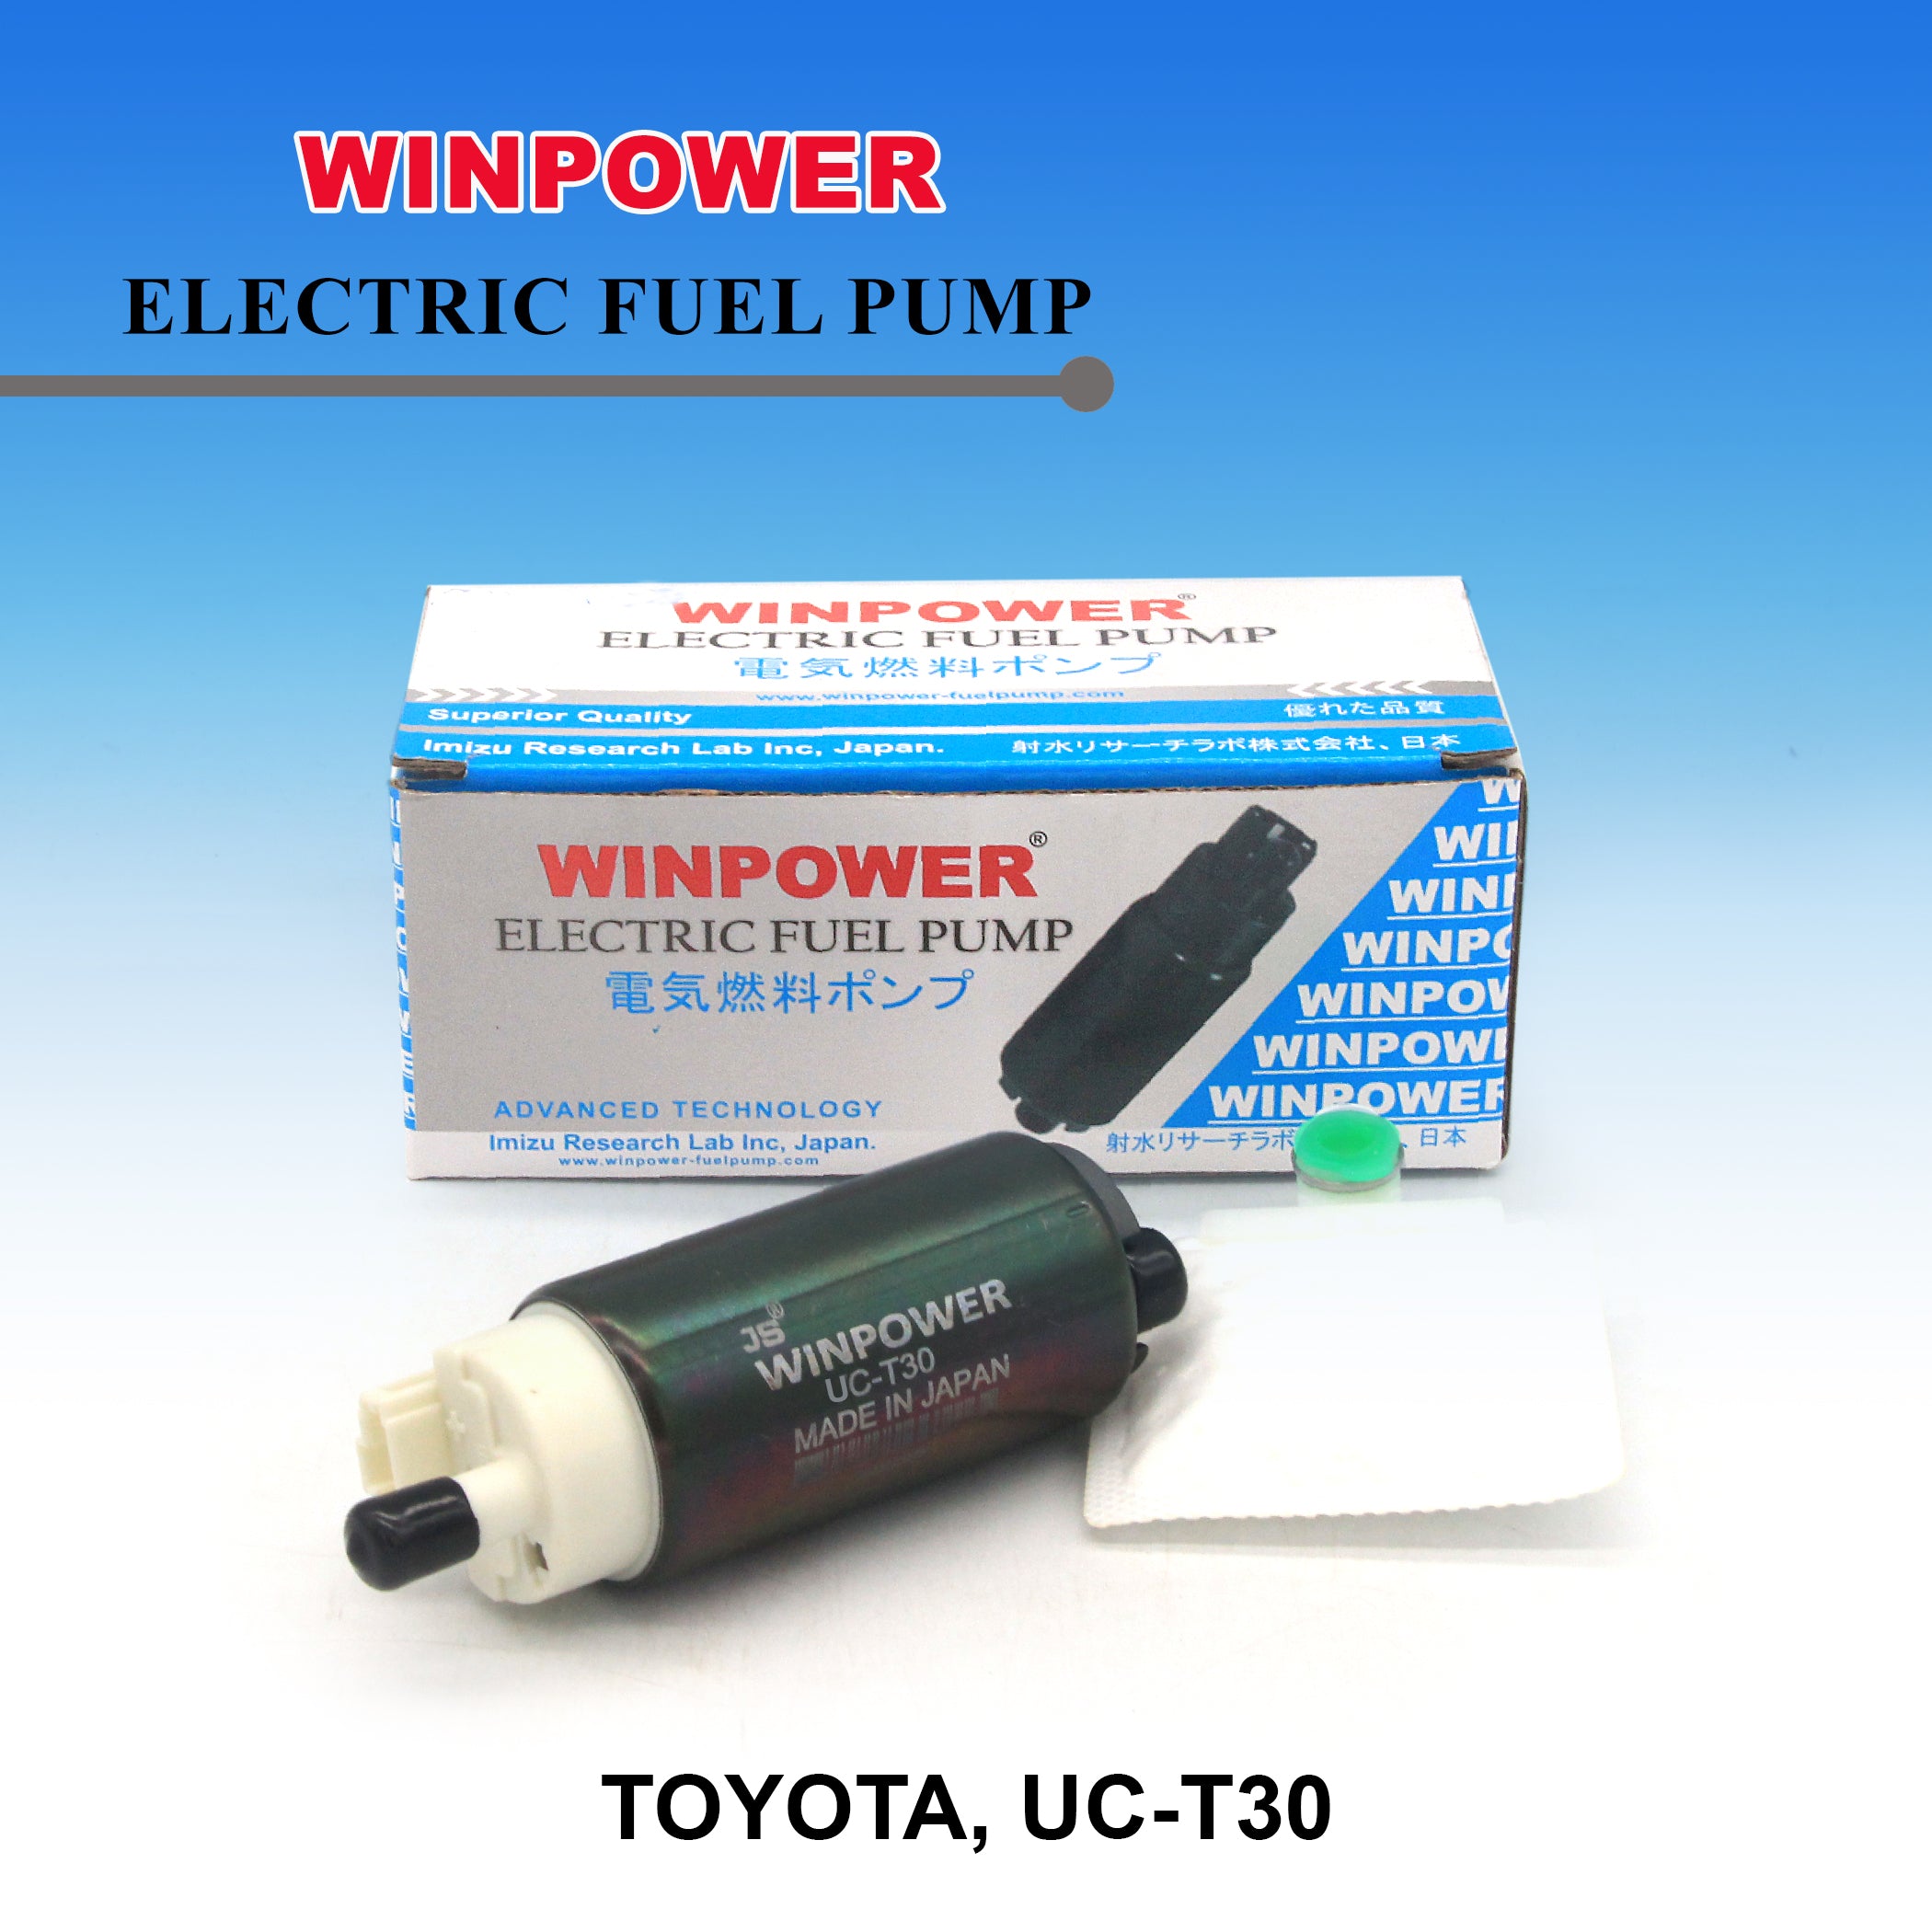 In-Tank Fuel Pump, WINPOWER, UC-T30, WF-3828 (005072)